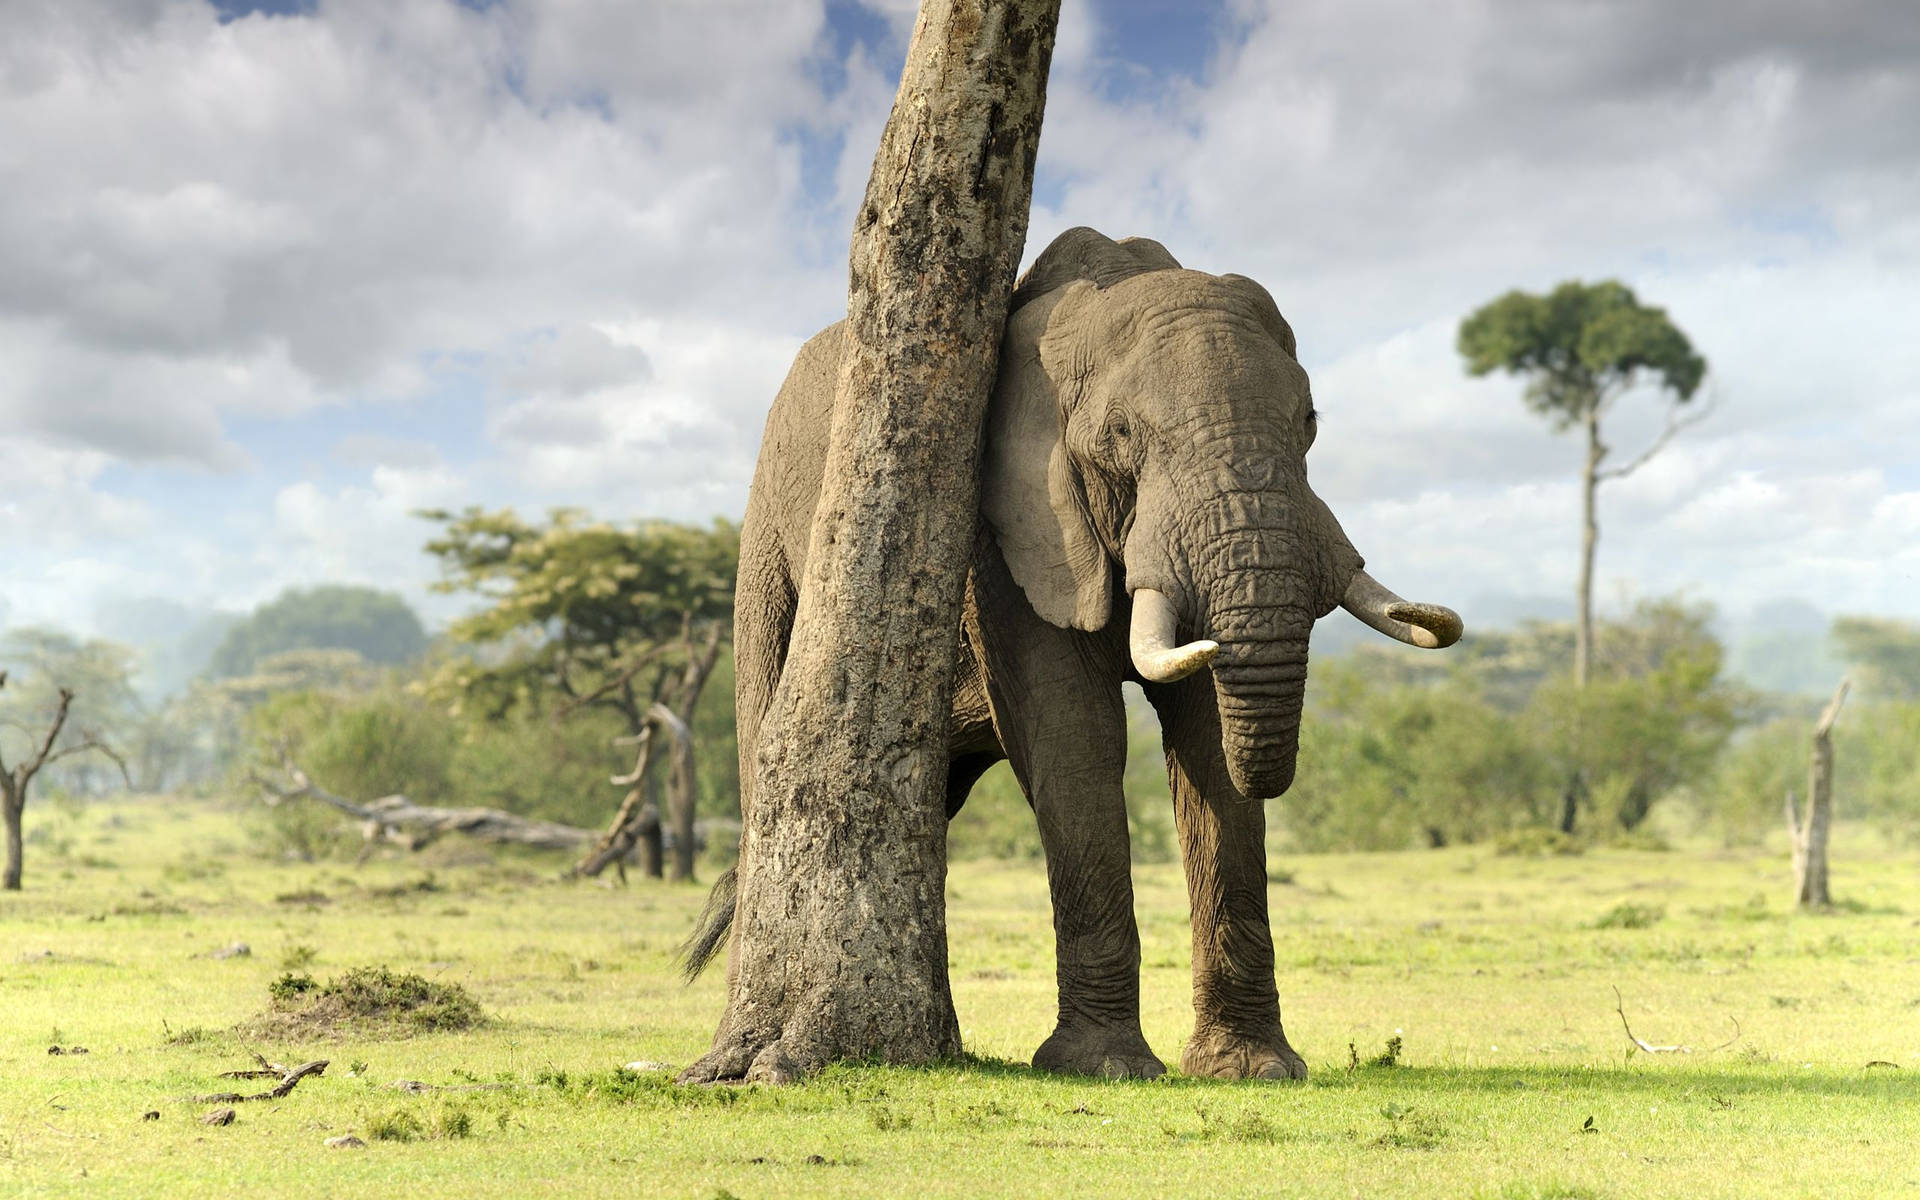 Imponenteelefante Africano En La Naturaleza Fondo de pantalla